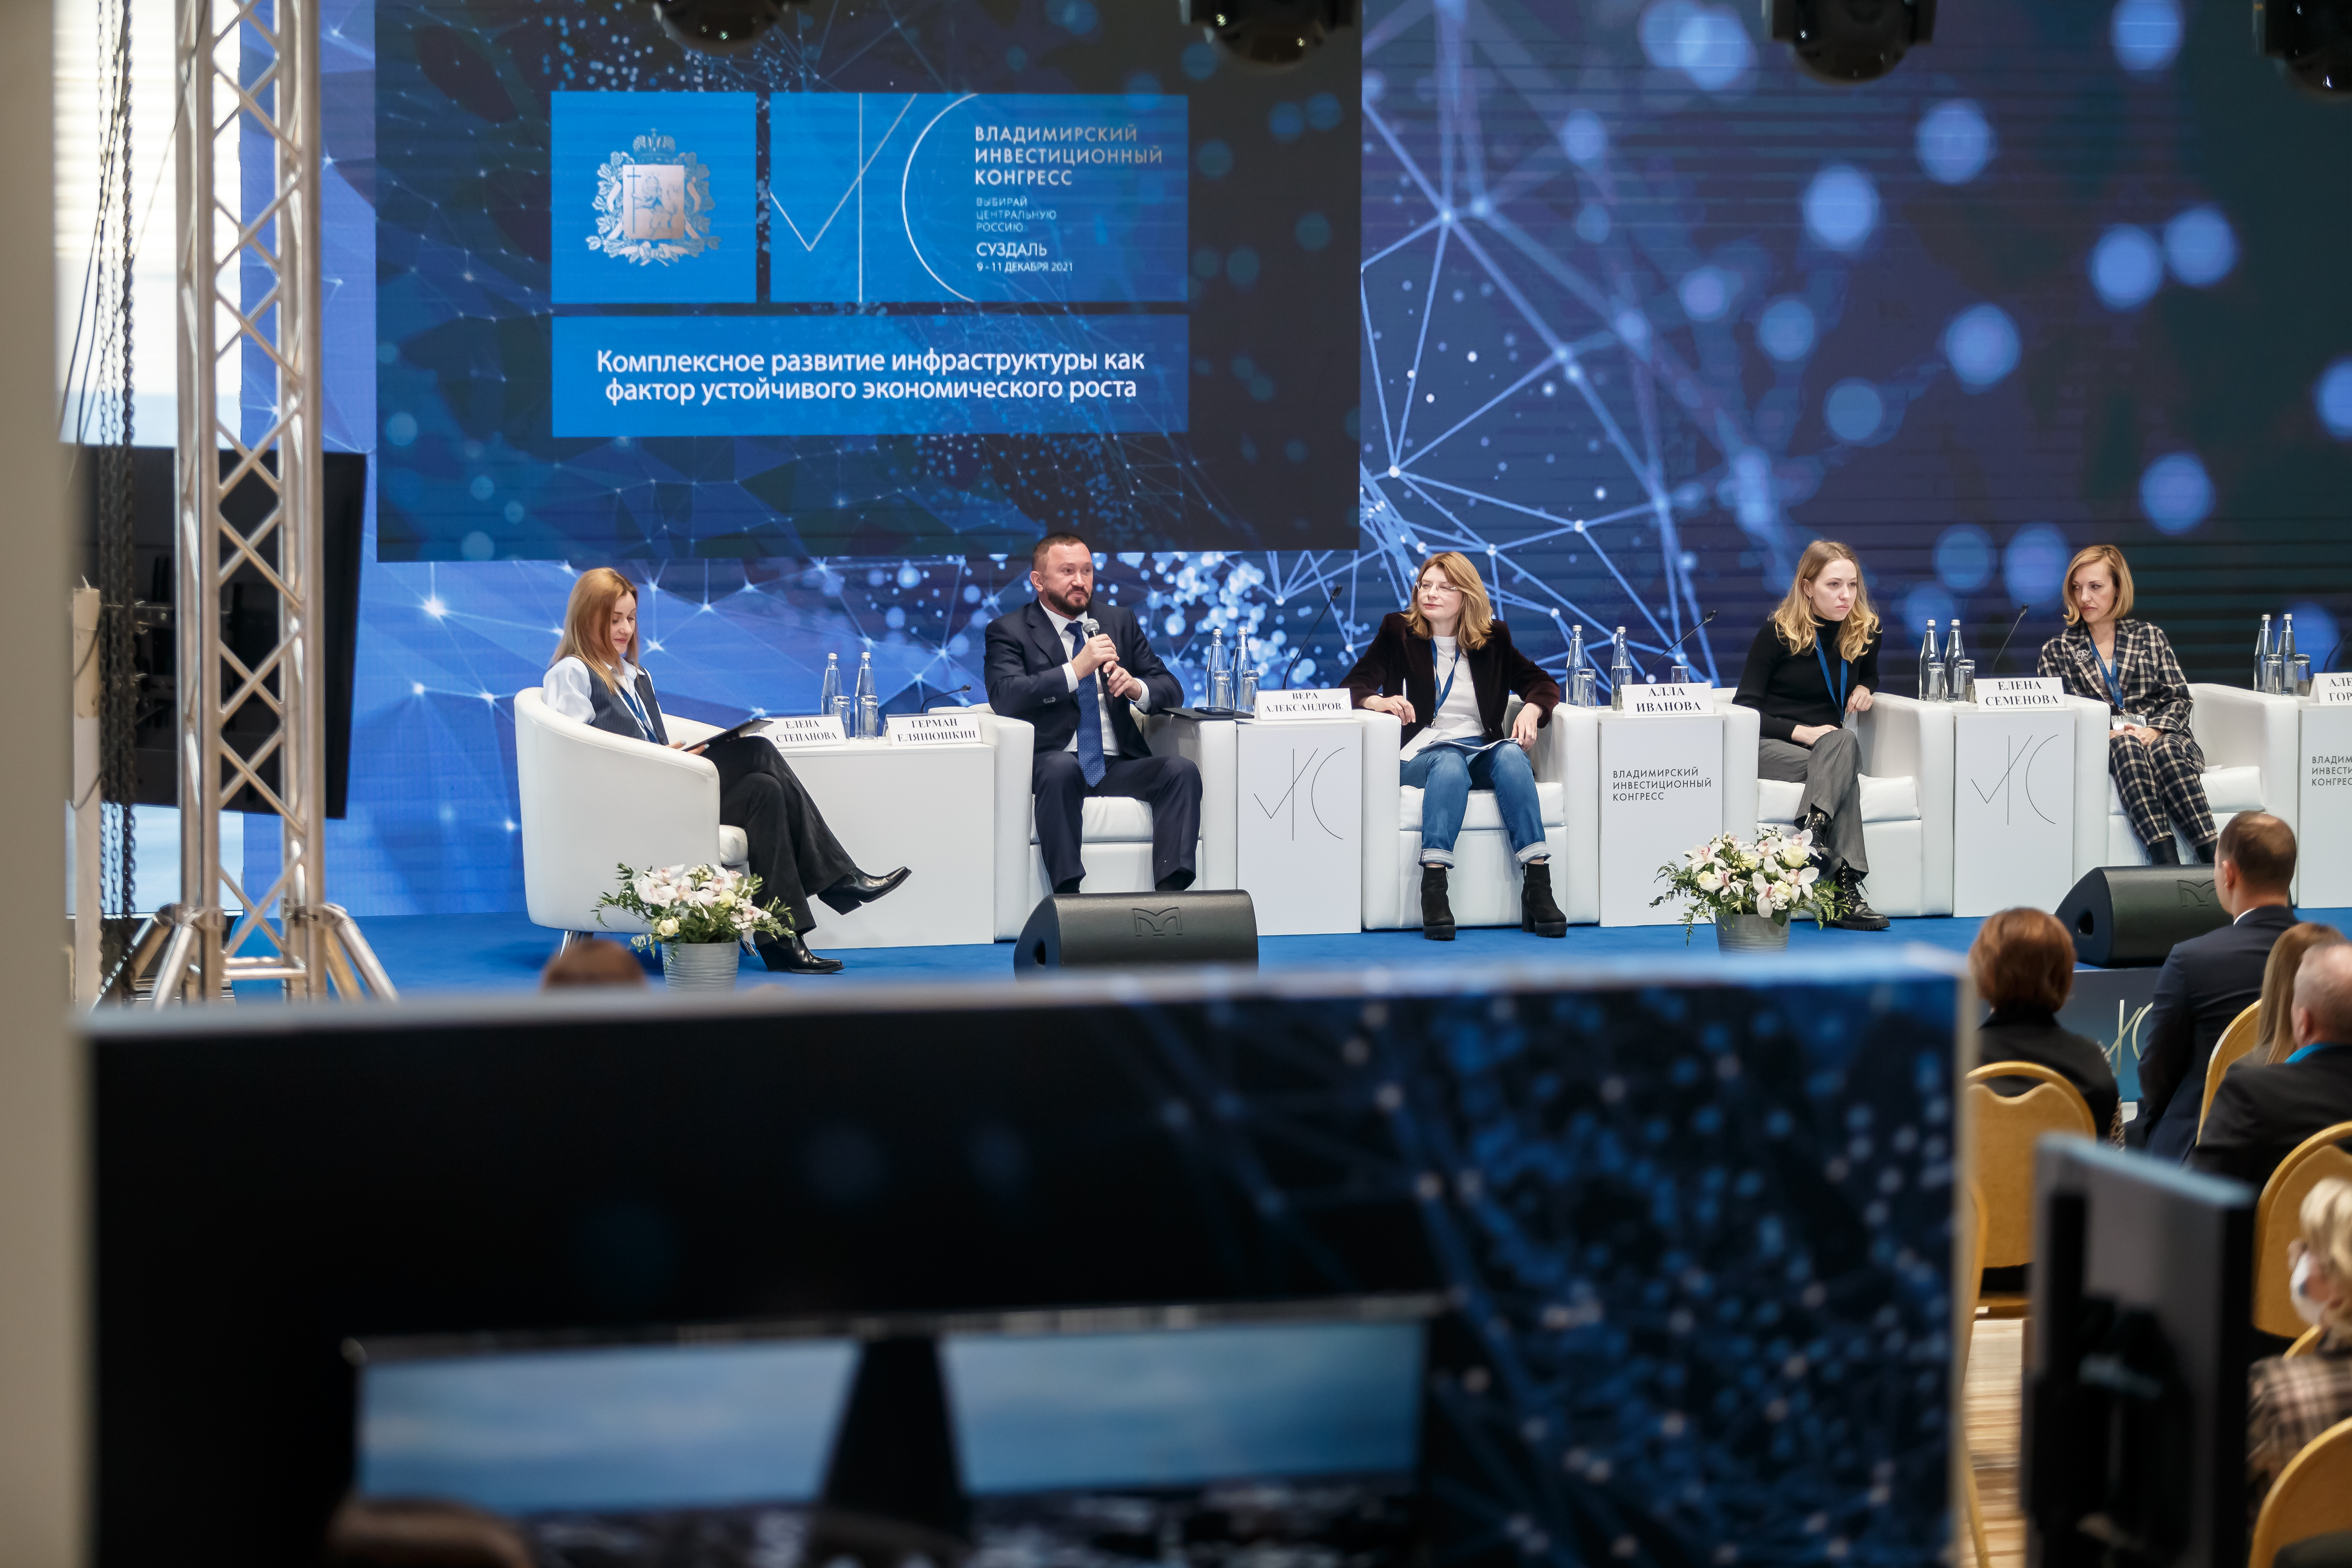 Представители Группы ВЭБ приняли участие во Владимирском инвестиционном конгрессе